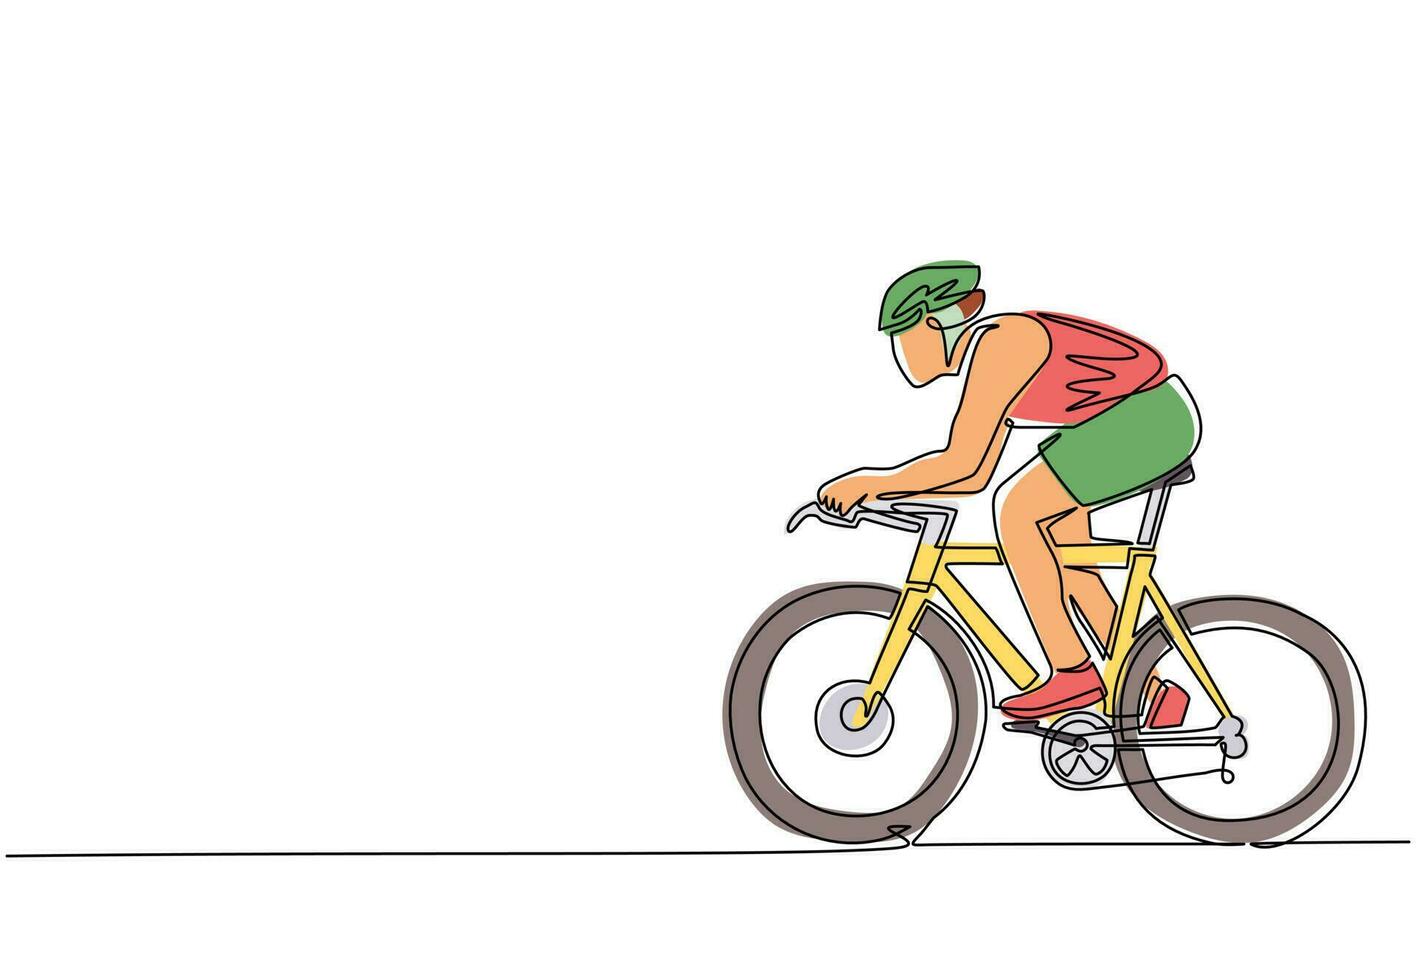 enda kontinuerlig linjeteckning ung energisk man cykelracer förbättra sin hastighet på träningspasset. racing cyklist koncept. hälsosam cykling sportevenemang. dynamisk en rad rita grafisk design vektor